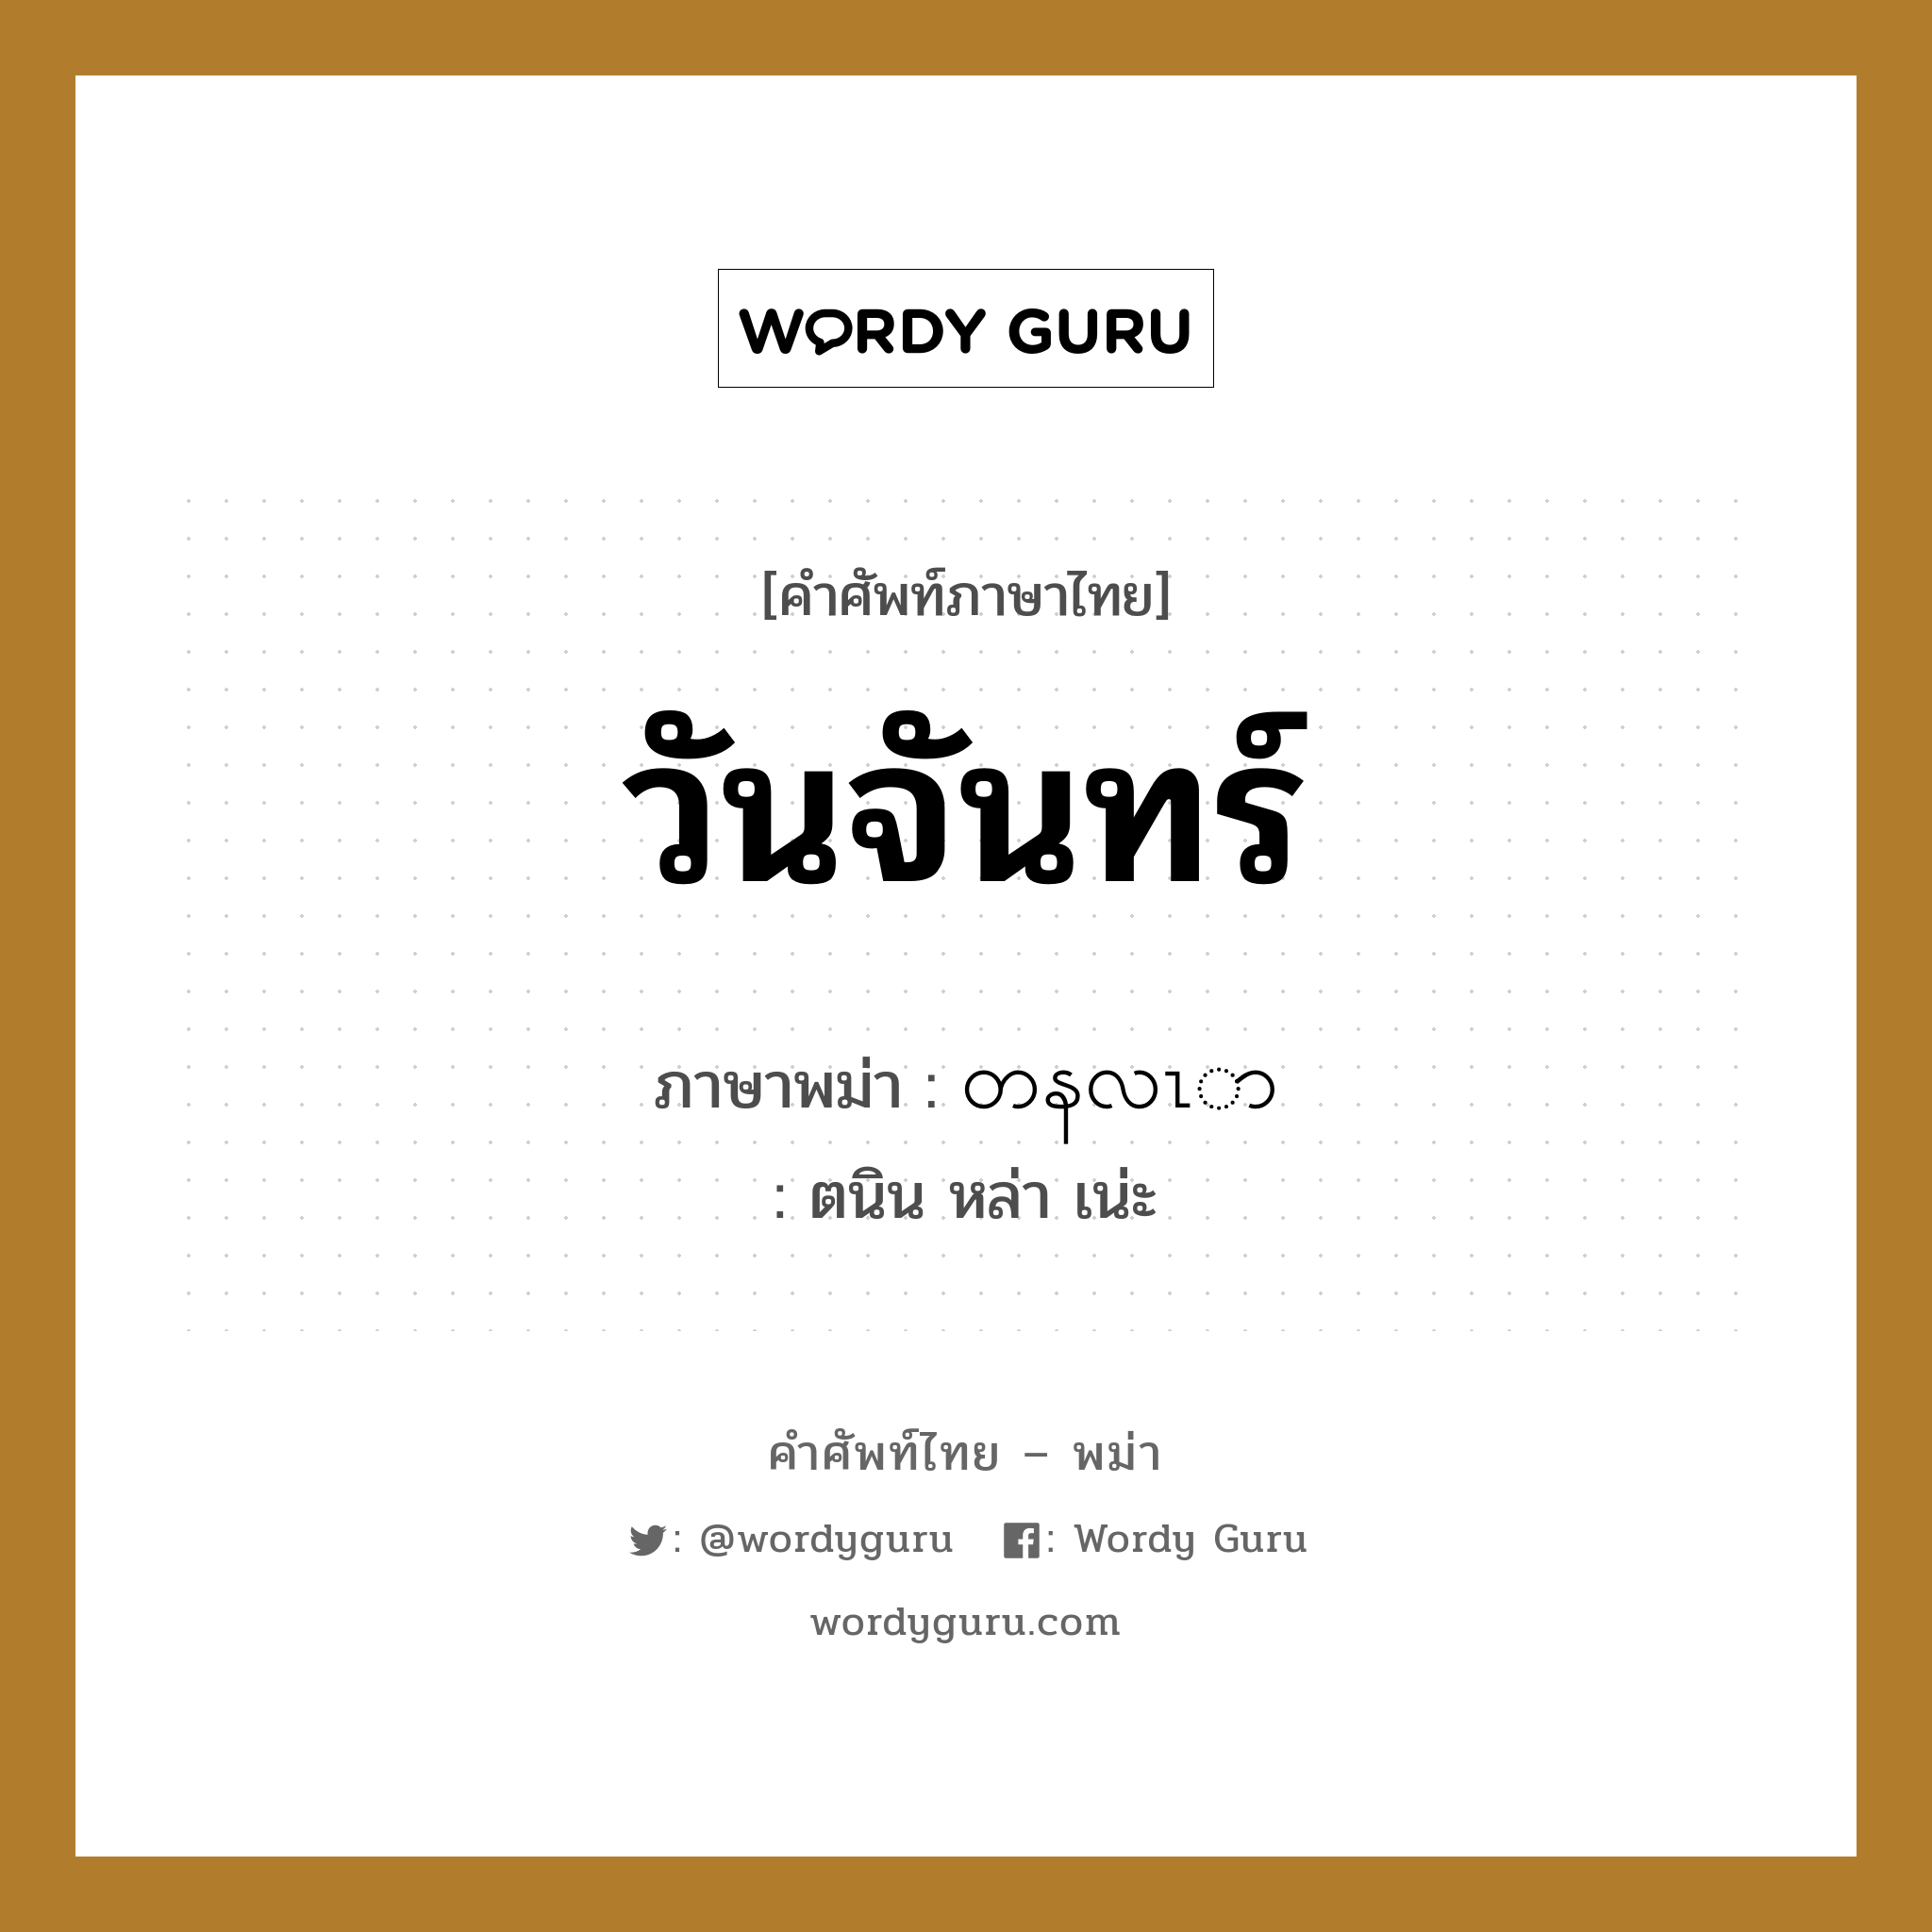 วันจันทร์ ภาษาพม่าคืออะไร, คำศัพท์ภาษาไทย - พม่า วันจันทร์ ภาษาพม่า တနလၤာ หมวด หมวดวัน เดือน ปี ตนิน หล่า เน่ะ หมวด หมวดวัน เดือน ปี